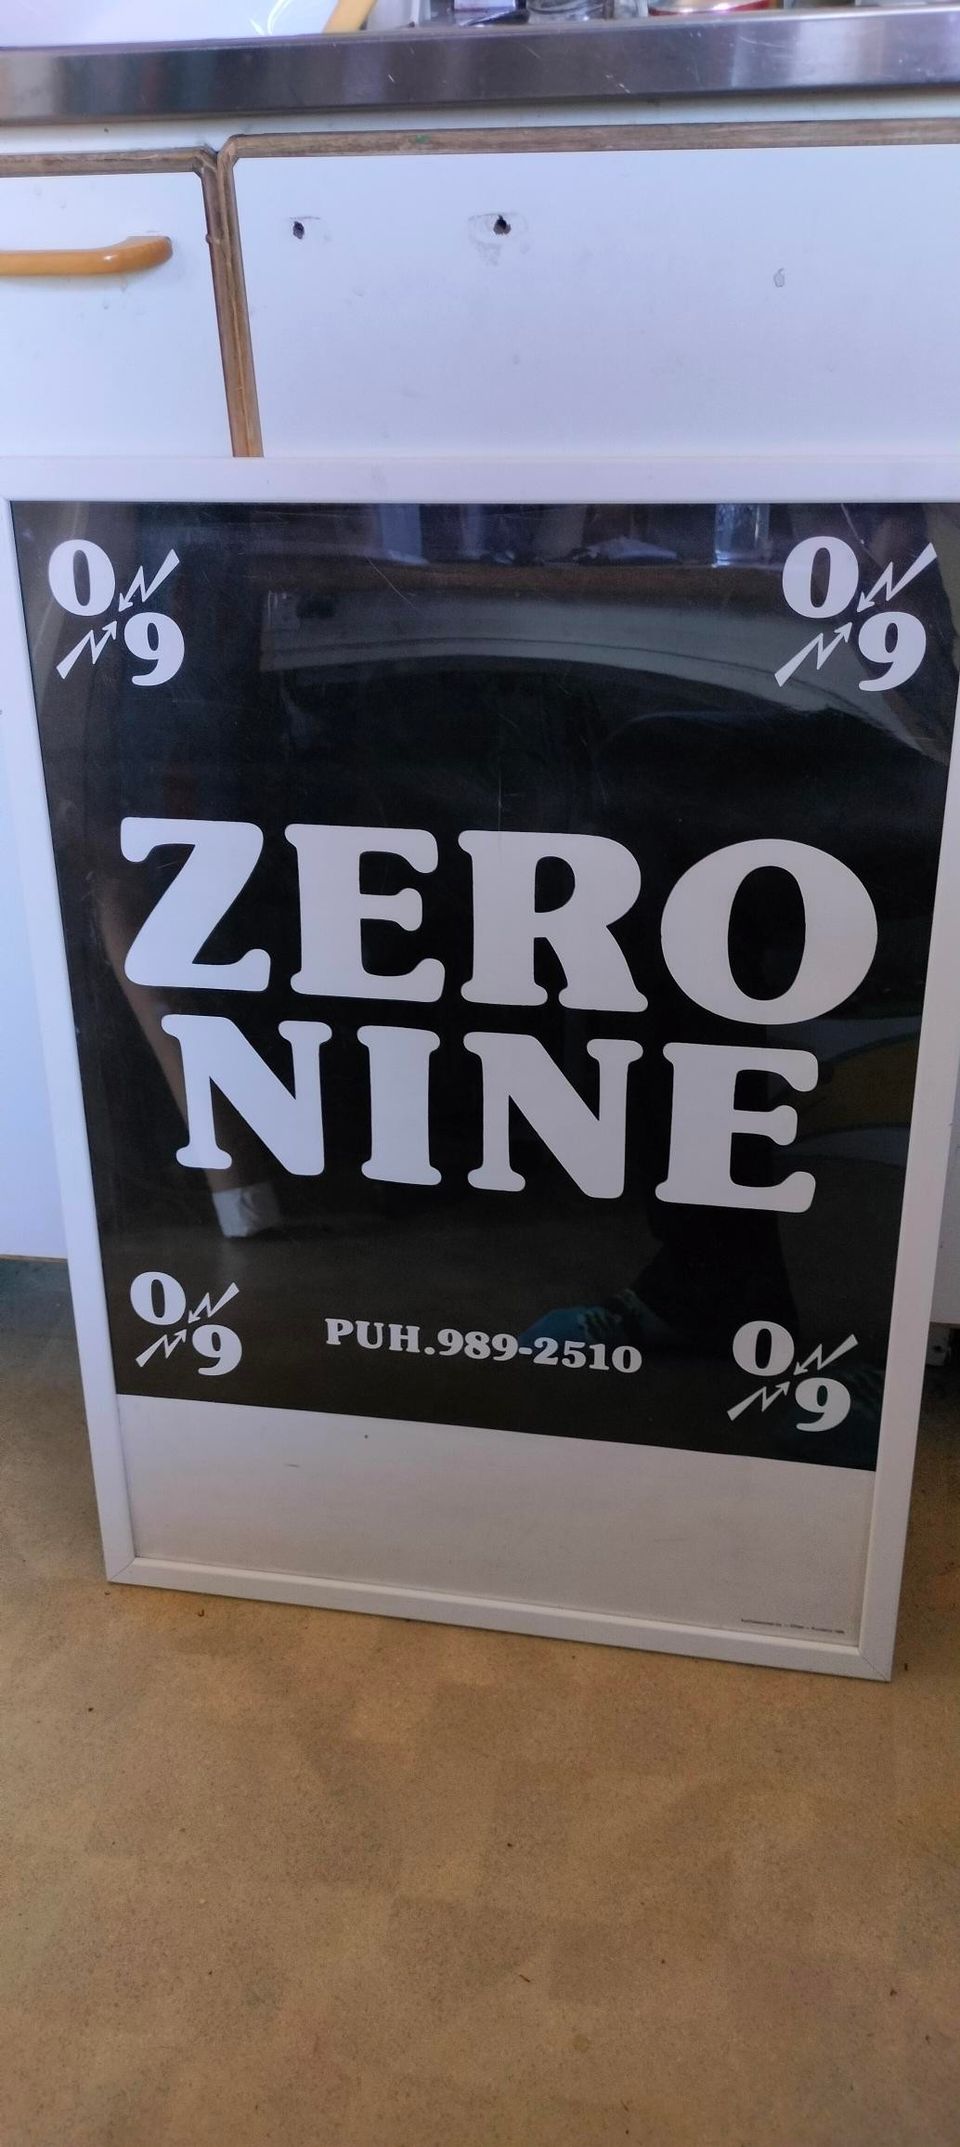 Zero nine juliste vintage